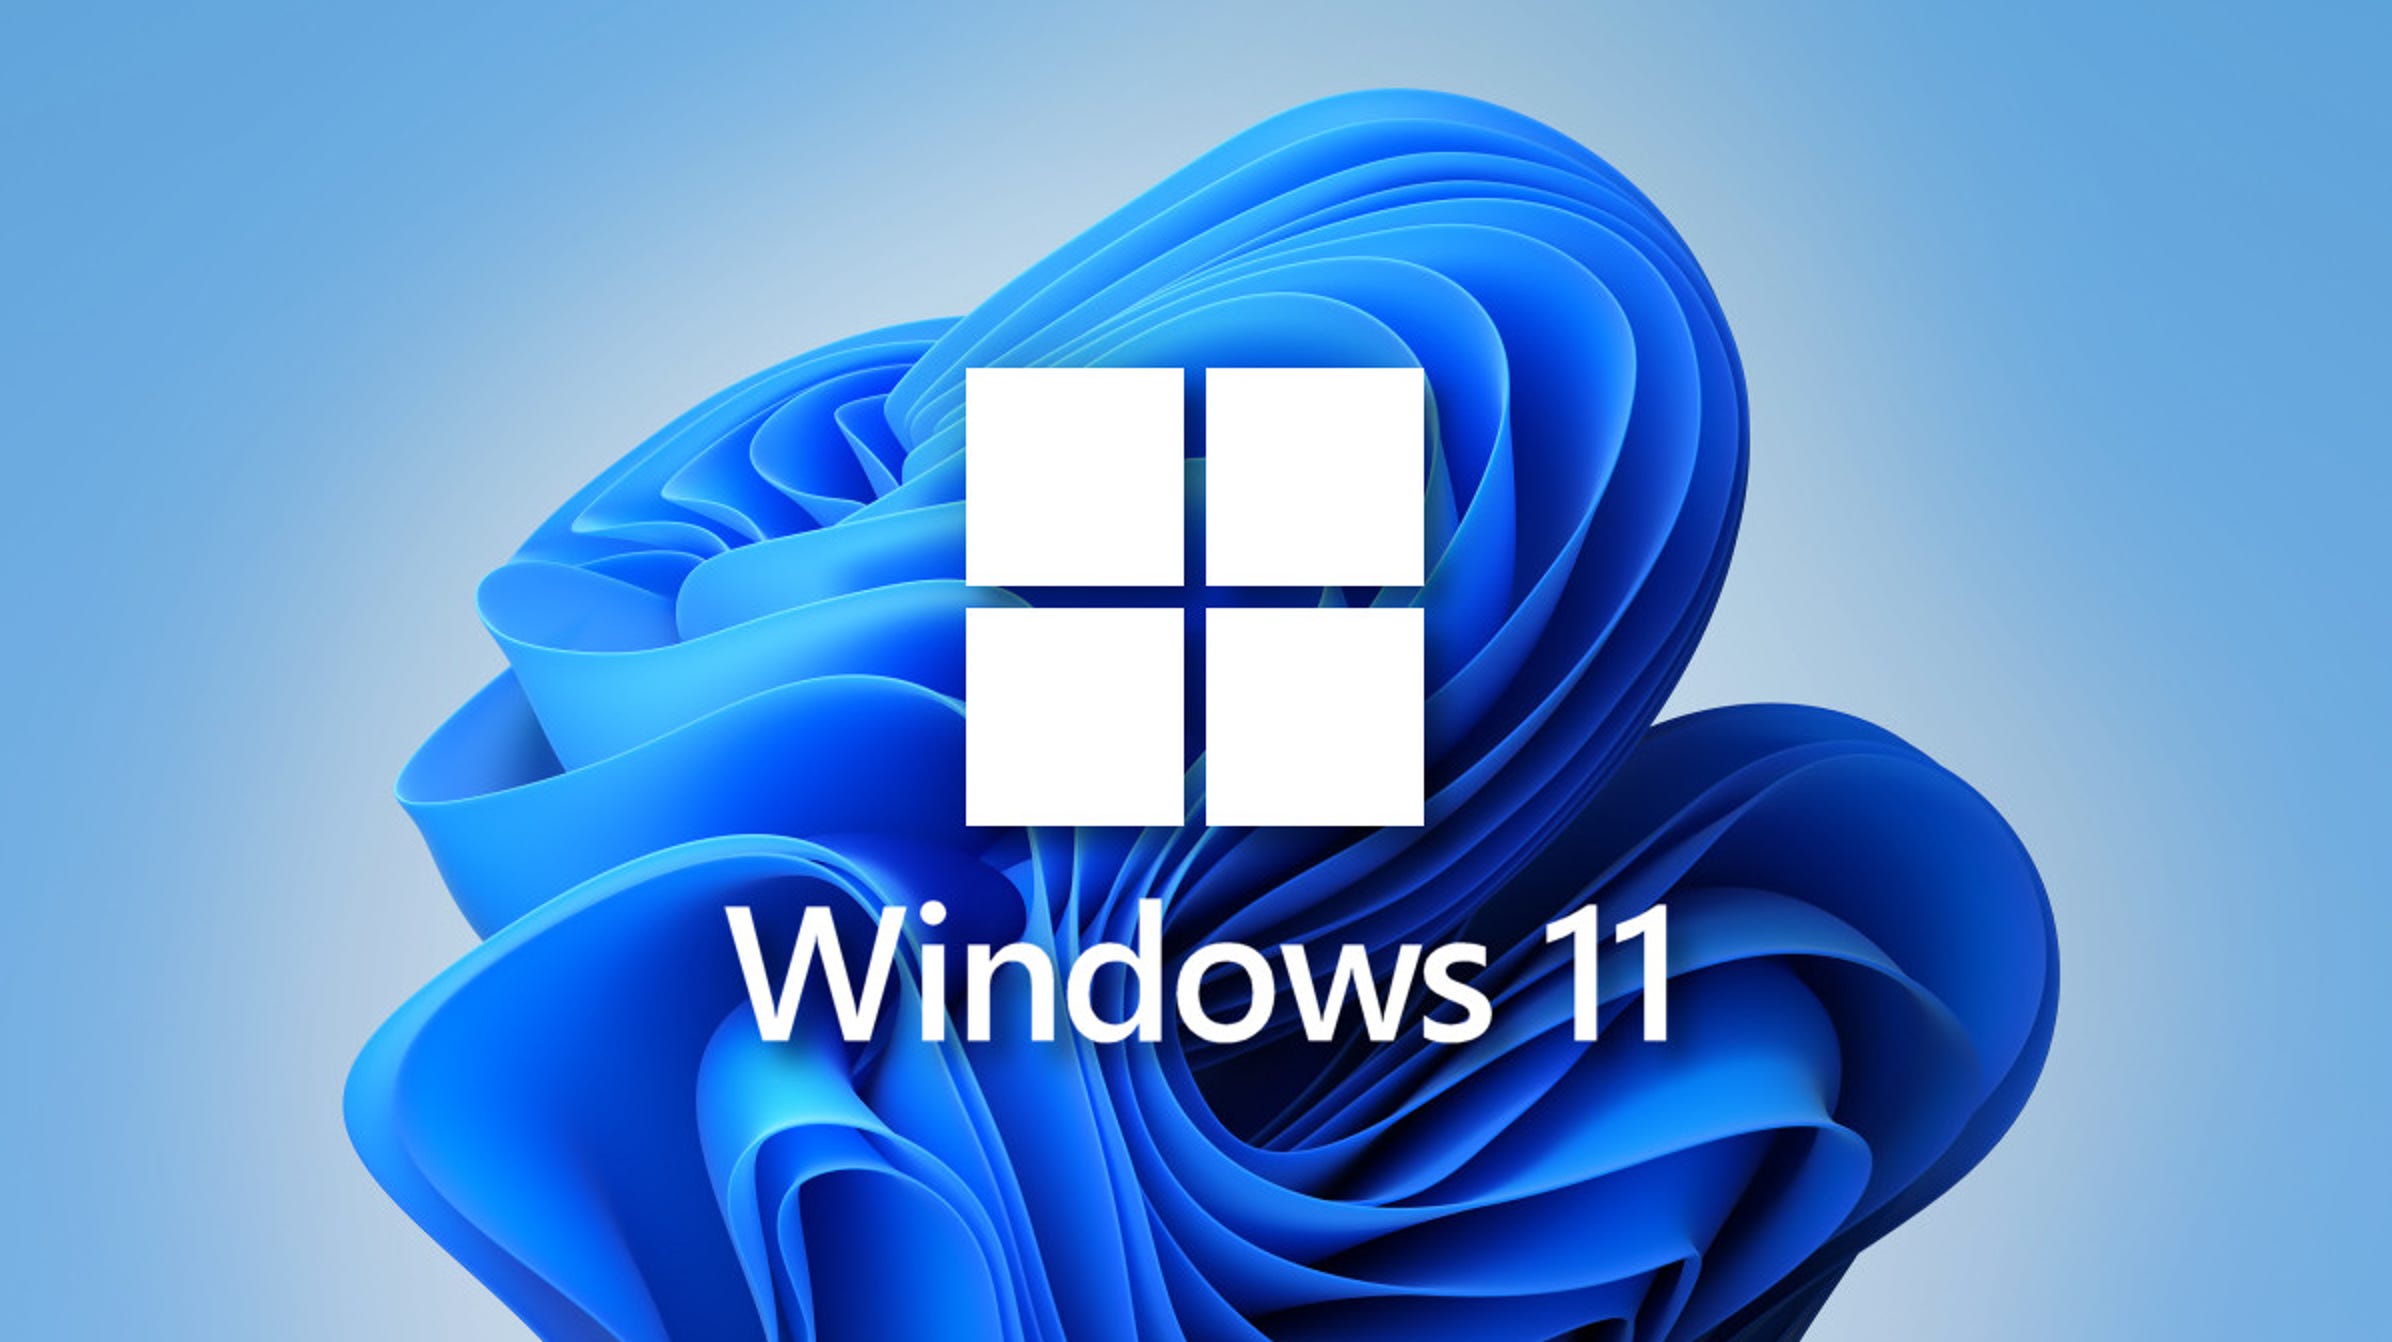 Użytkownicy Windows 10 zaczęli otrzymywać nowe reklamy z prośbą o aktualizację do Windows 11